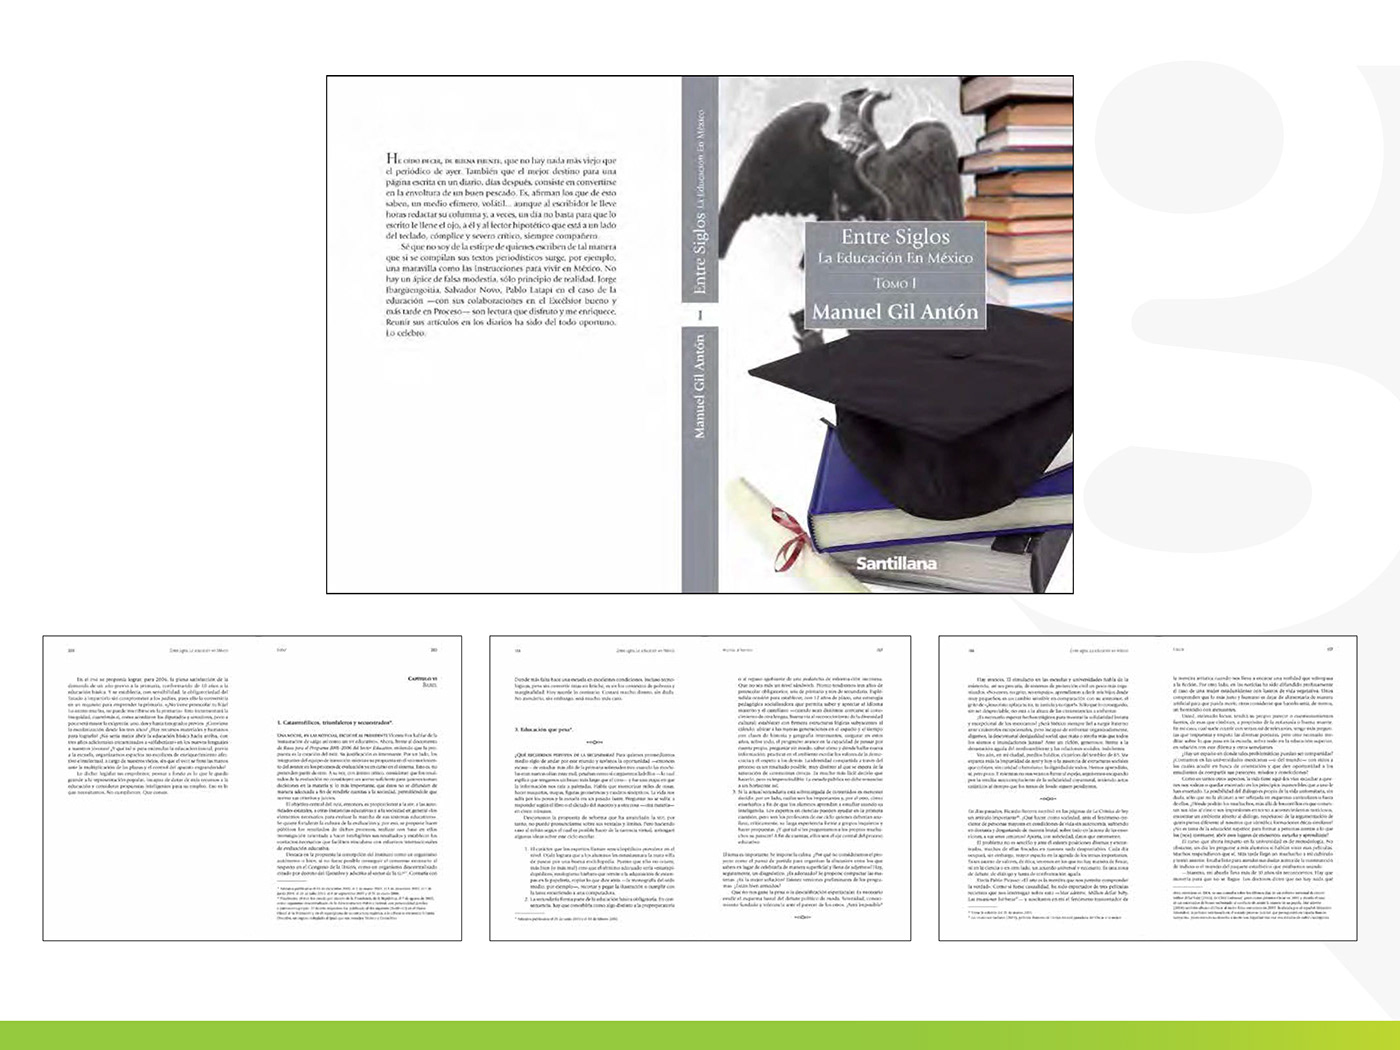 book design cover desing diseño de libro Diseño de portada Diseño editorial editorial editorial design  Layout tipografia type setting